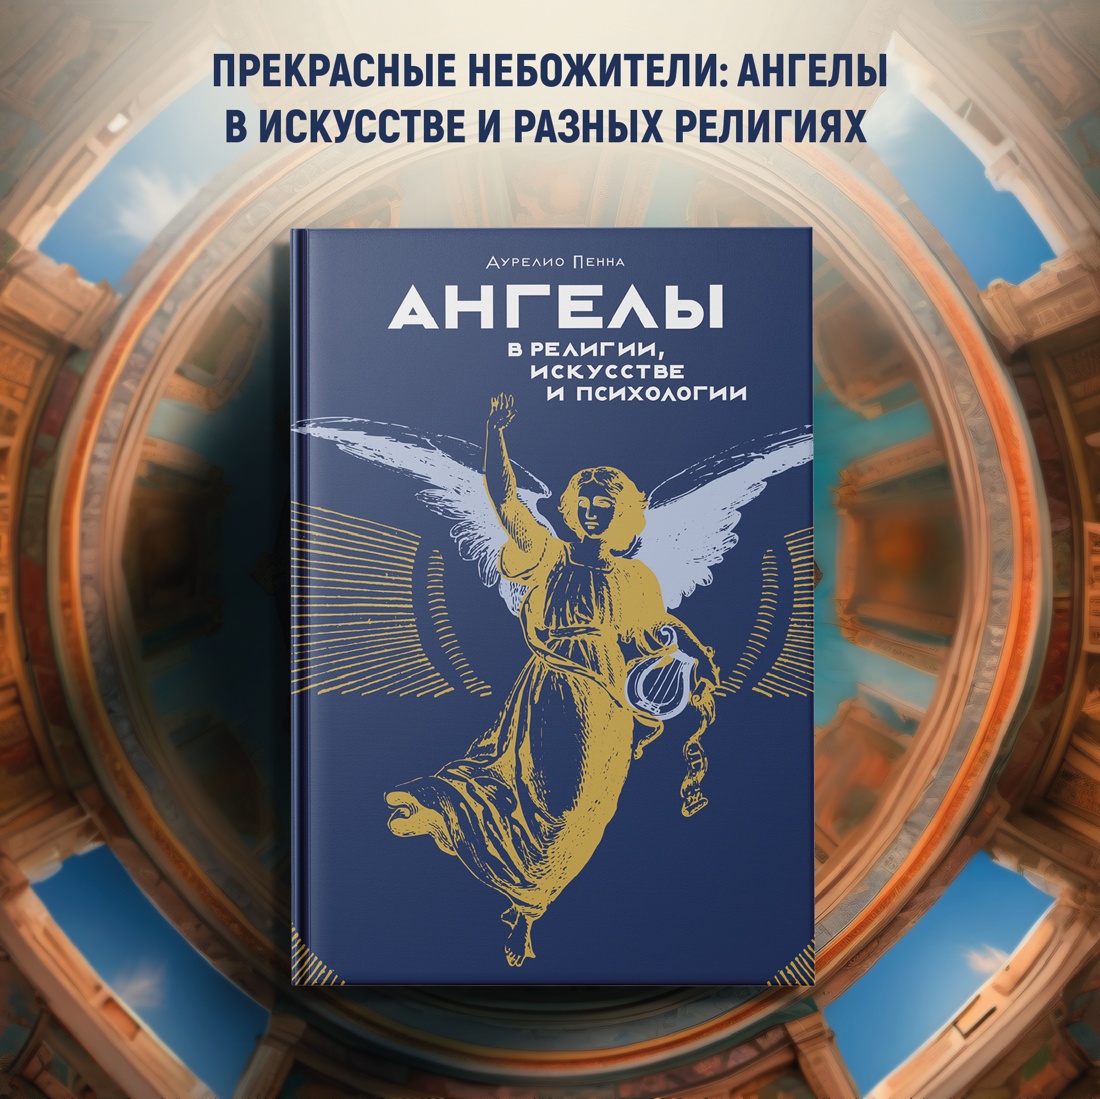 Промо материал к книге "Ангелы в религии, искусстве и психологии" №0